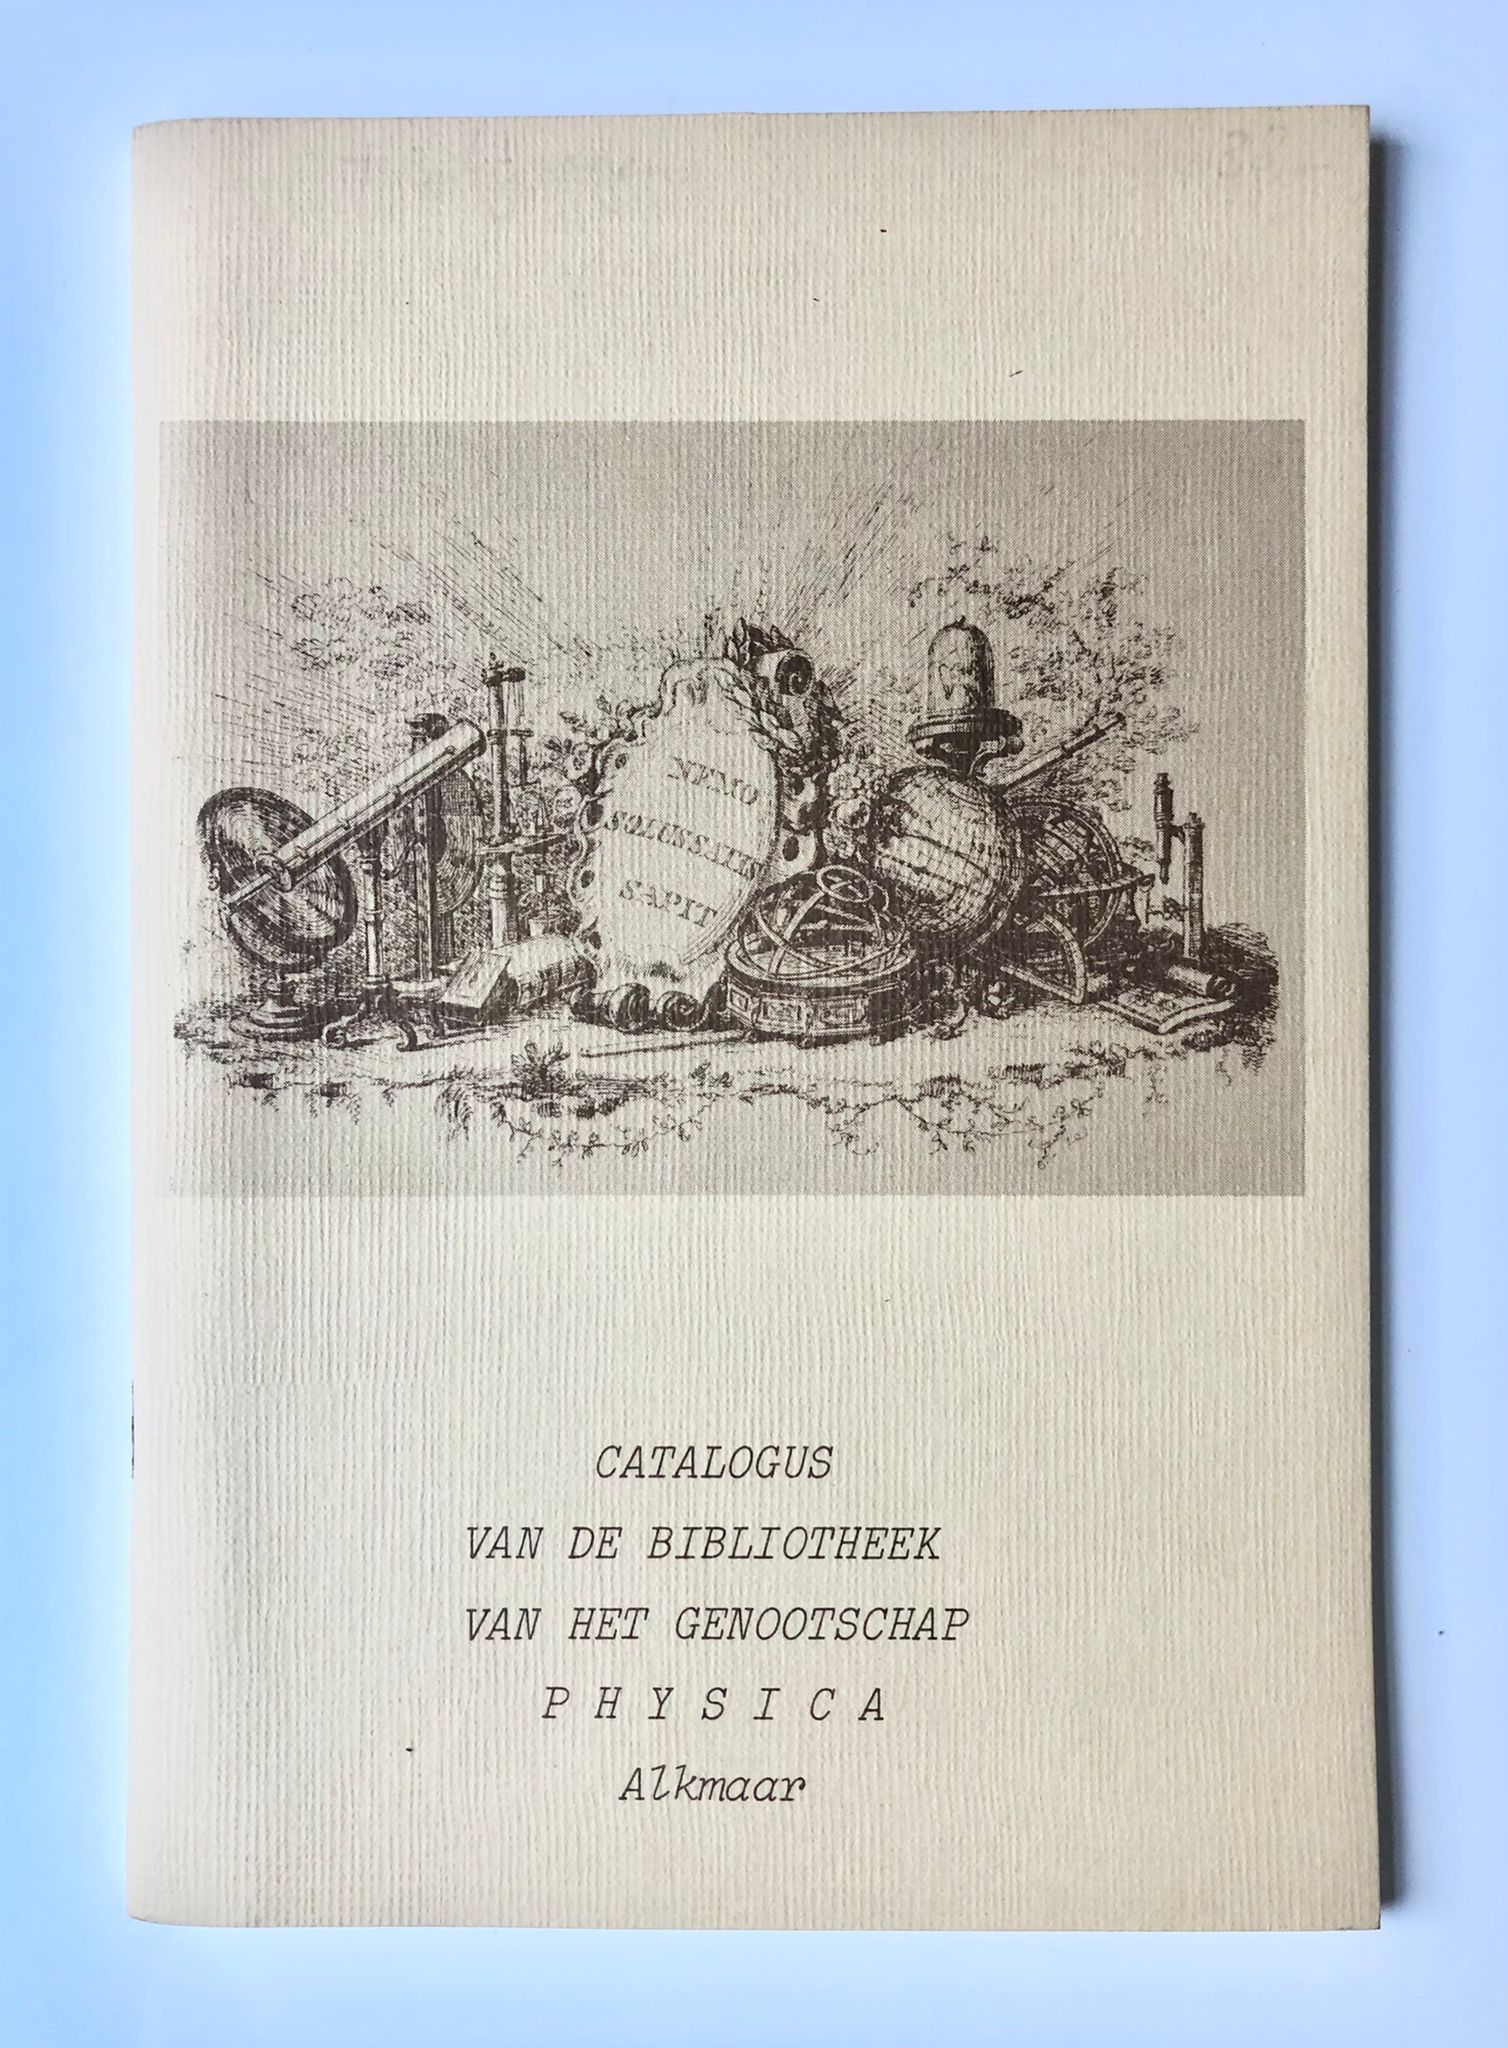 [Four items society Physica Alkmaar] Catalogus van de Bibliotheek van het genootschap Physica, Alkmaar, Samengesteld door G. I. Plenckers-Keyser, uitgegeven door het genootschap ter gelegenheid van het 200-jarig bestaan, 1782-1982, met drie bijlagen, 1982, 62 pp.